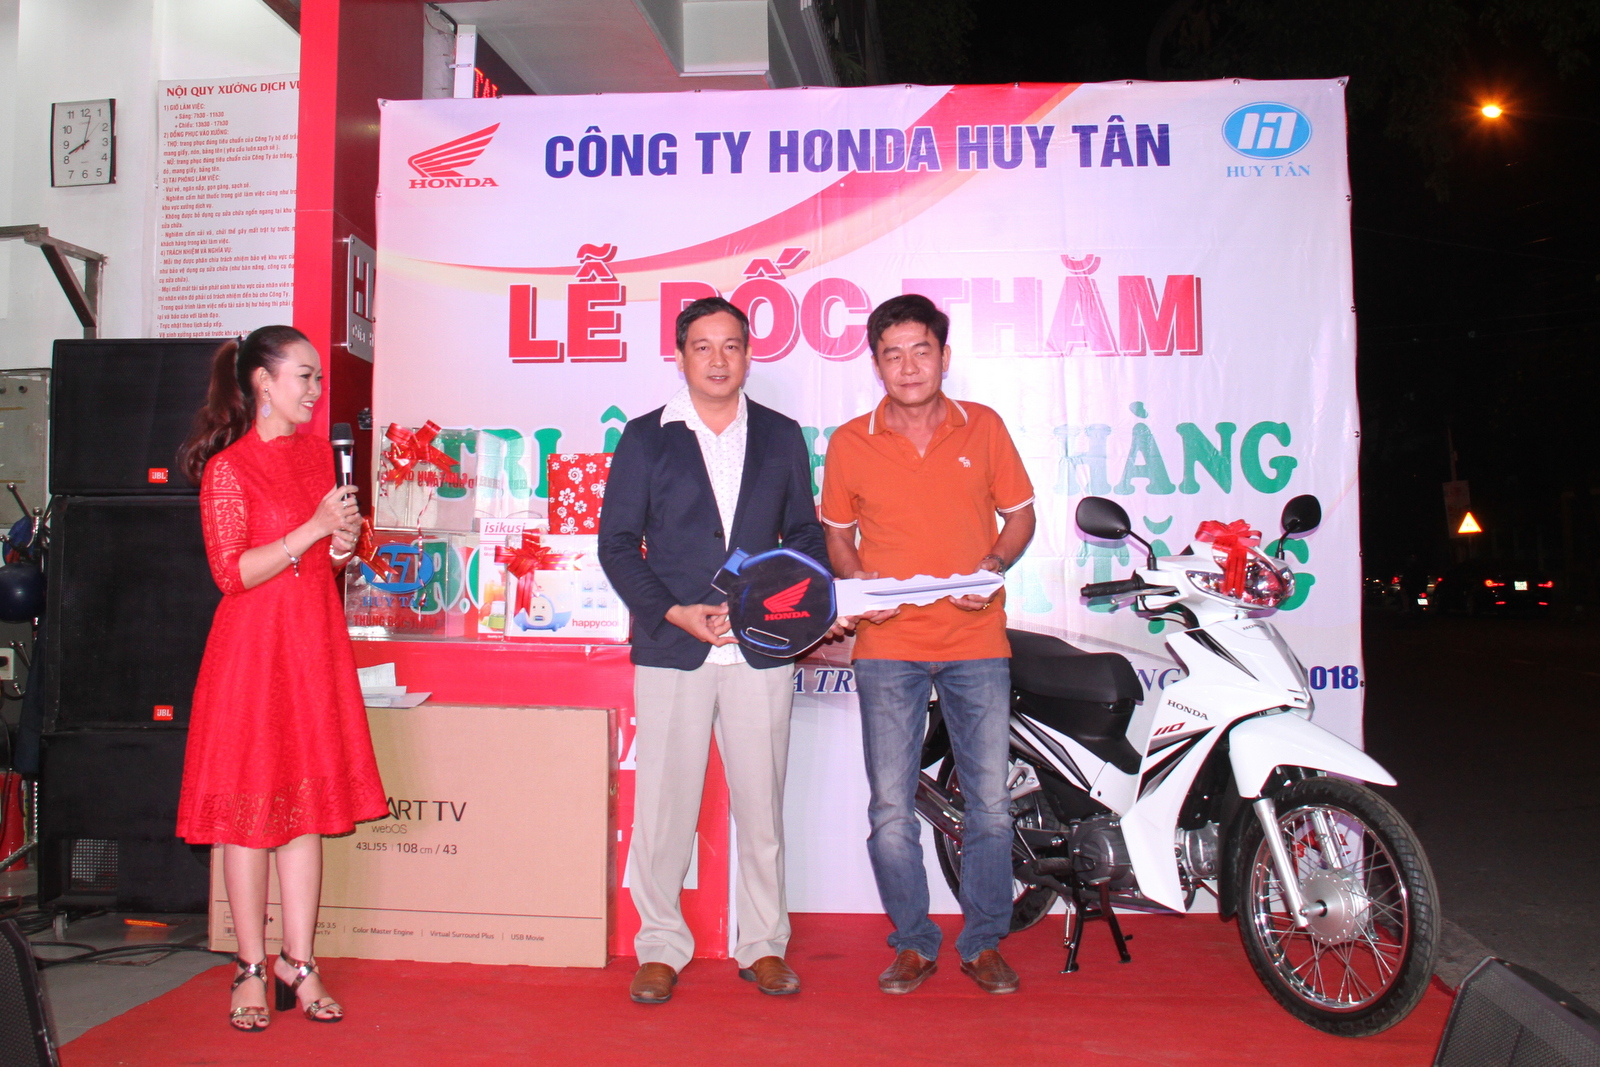 Ông Phạm Duy Nghĩa – đại diện Ban giám đốc Công ty TNHH Huy Tân trao giải đặc biệt – xe Blade cho anh Hồng Quang Kỳ